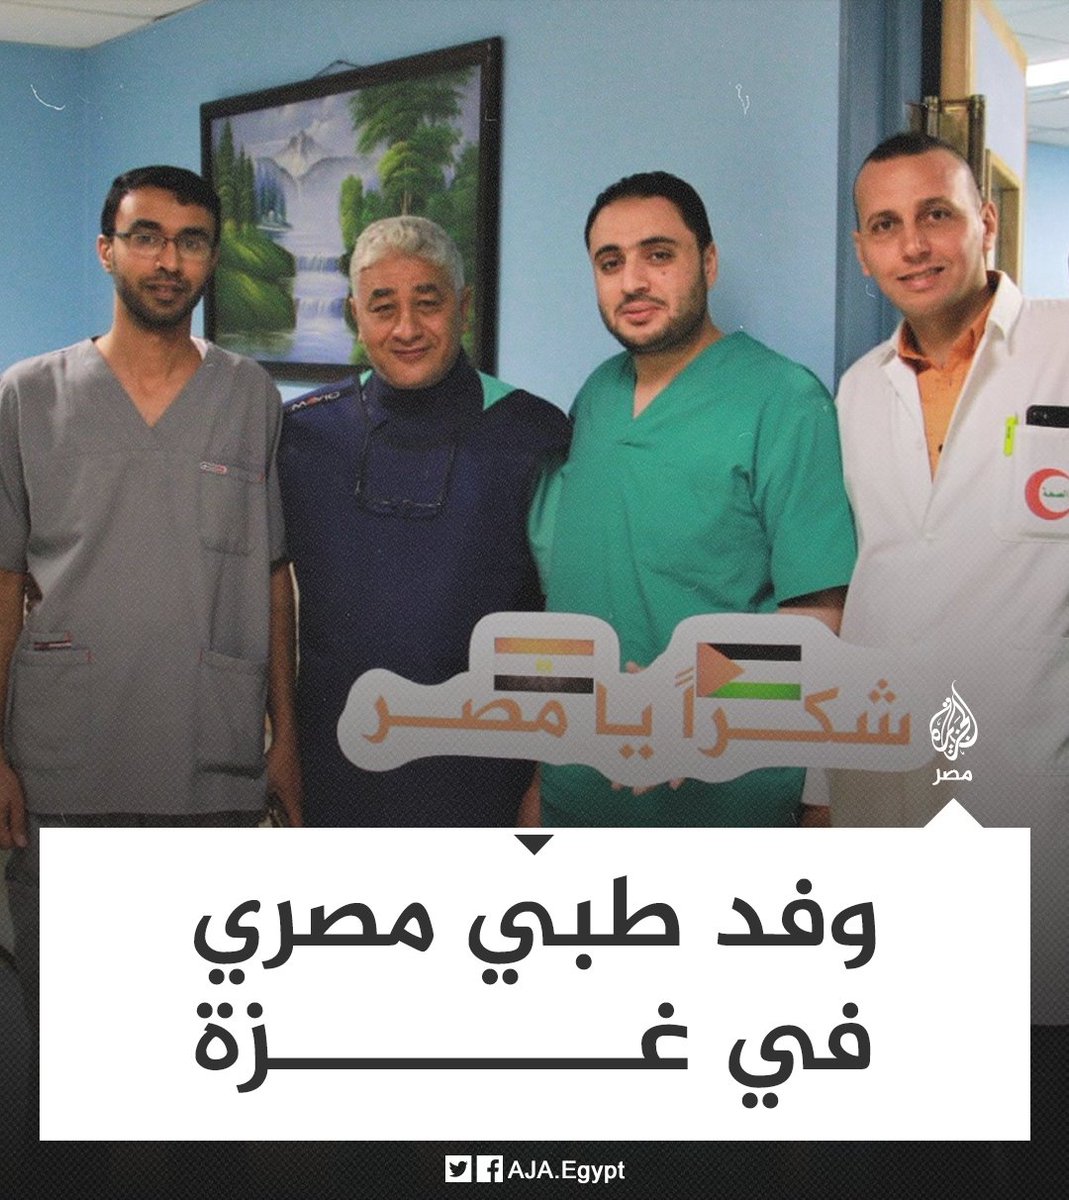 الجزيرة مصر On Twitter الوفد الطبي المصري في قطاع غزة يواصل إجراء 